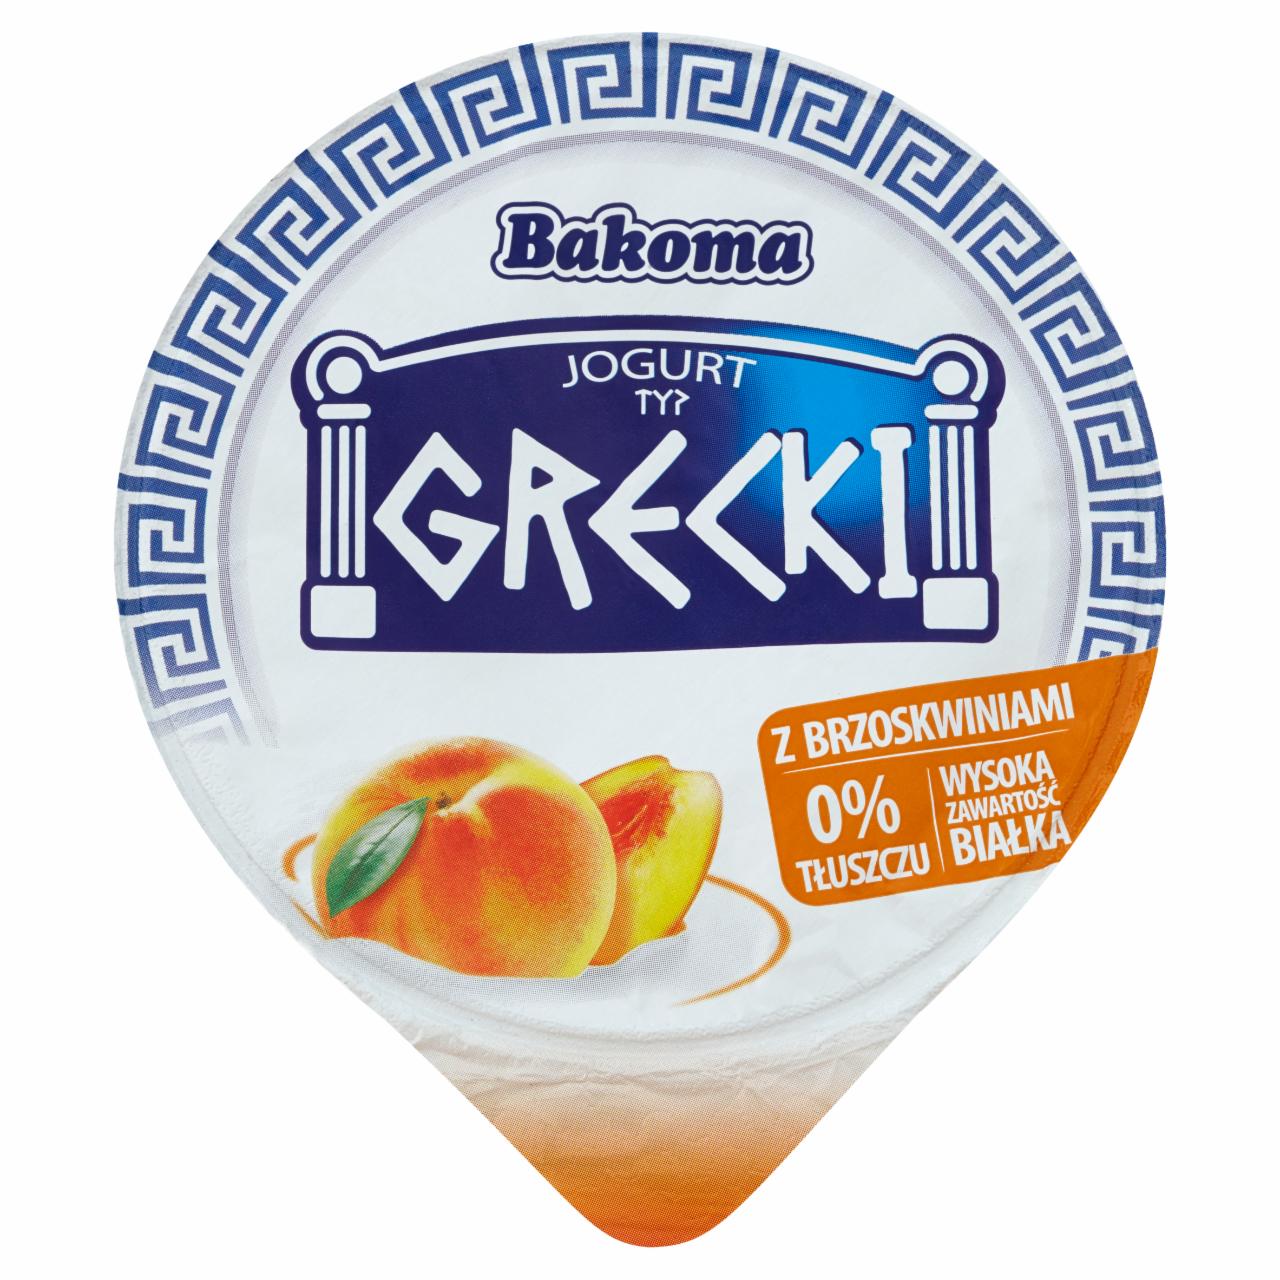 Zdjęcia - Bakoma Jogurt typ grecki z brzoskwiniami 140 g